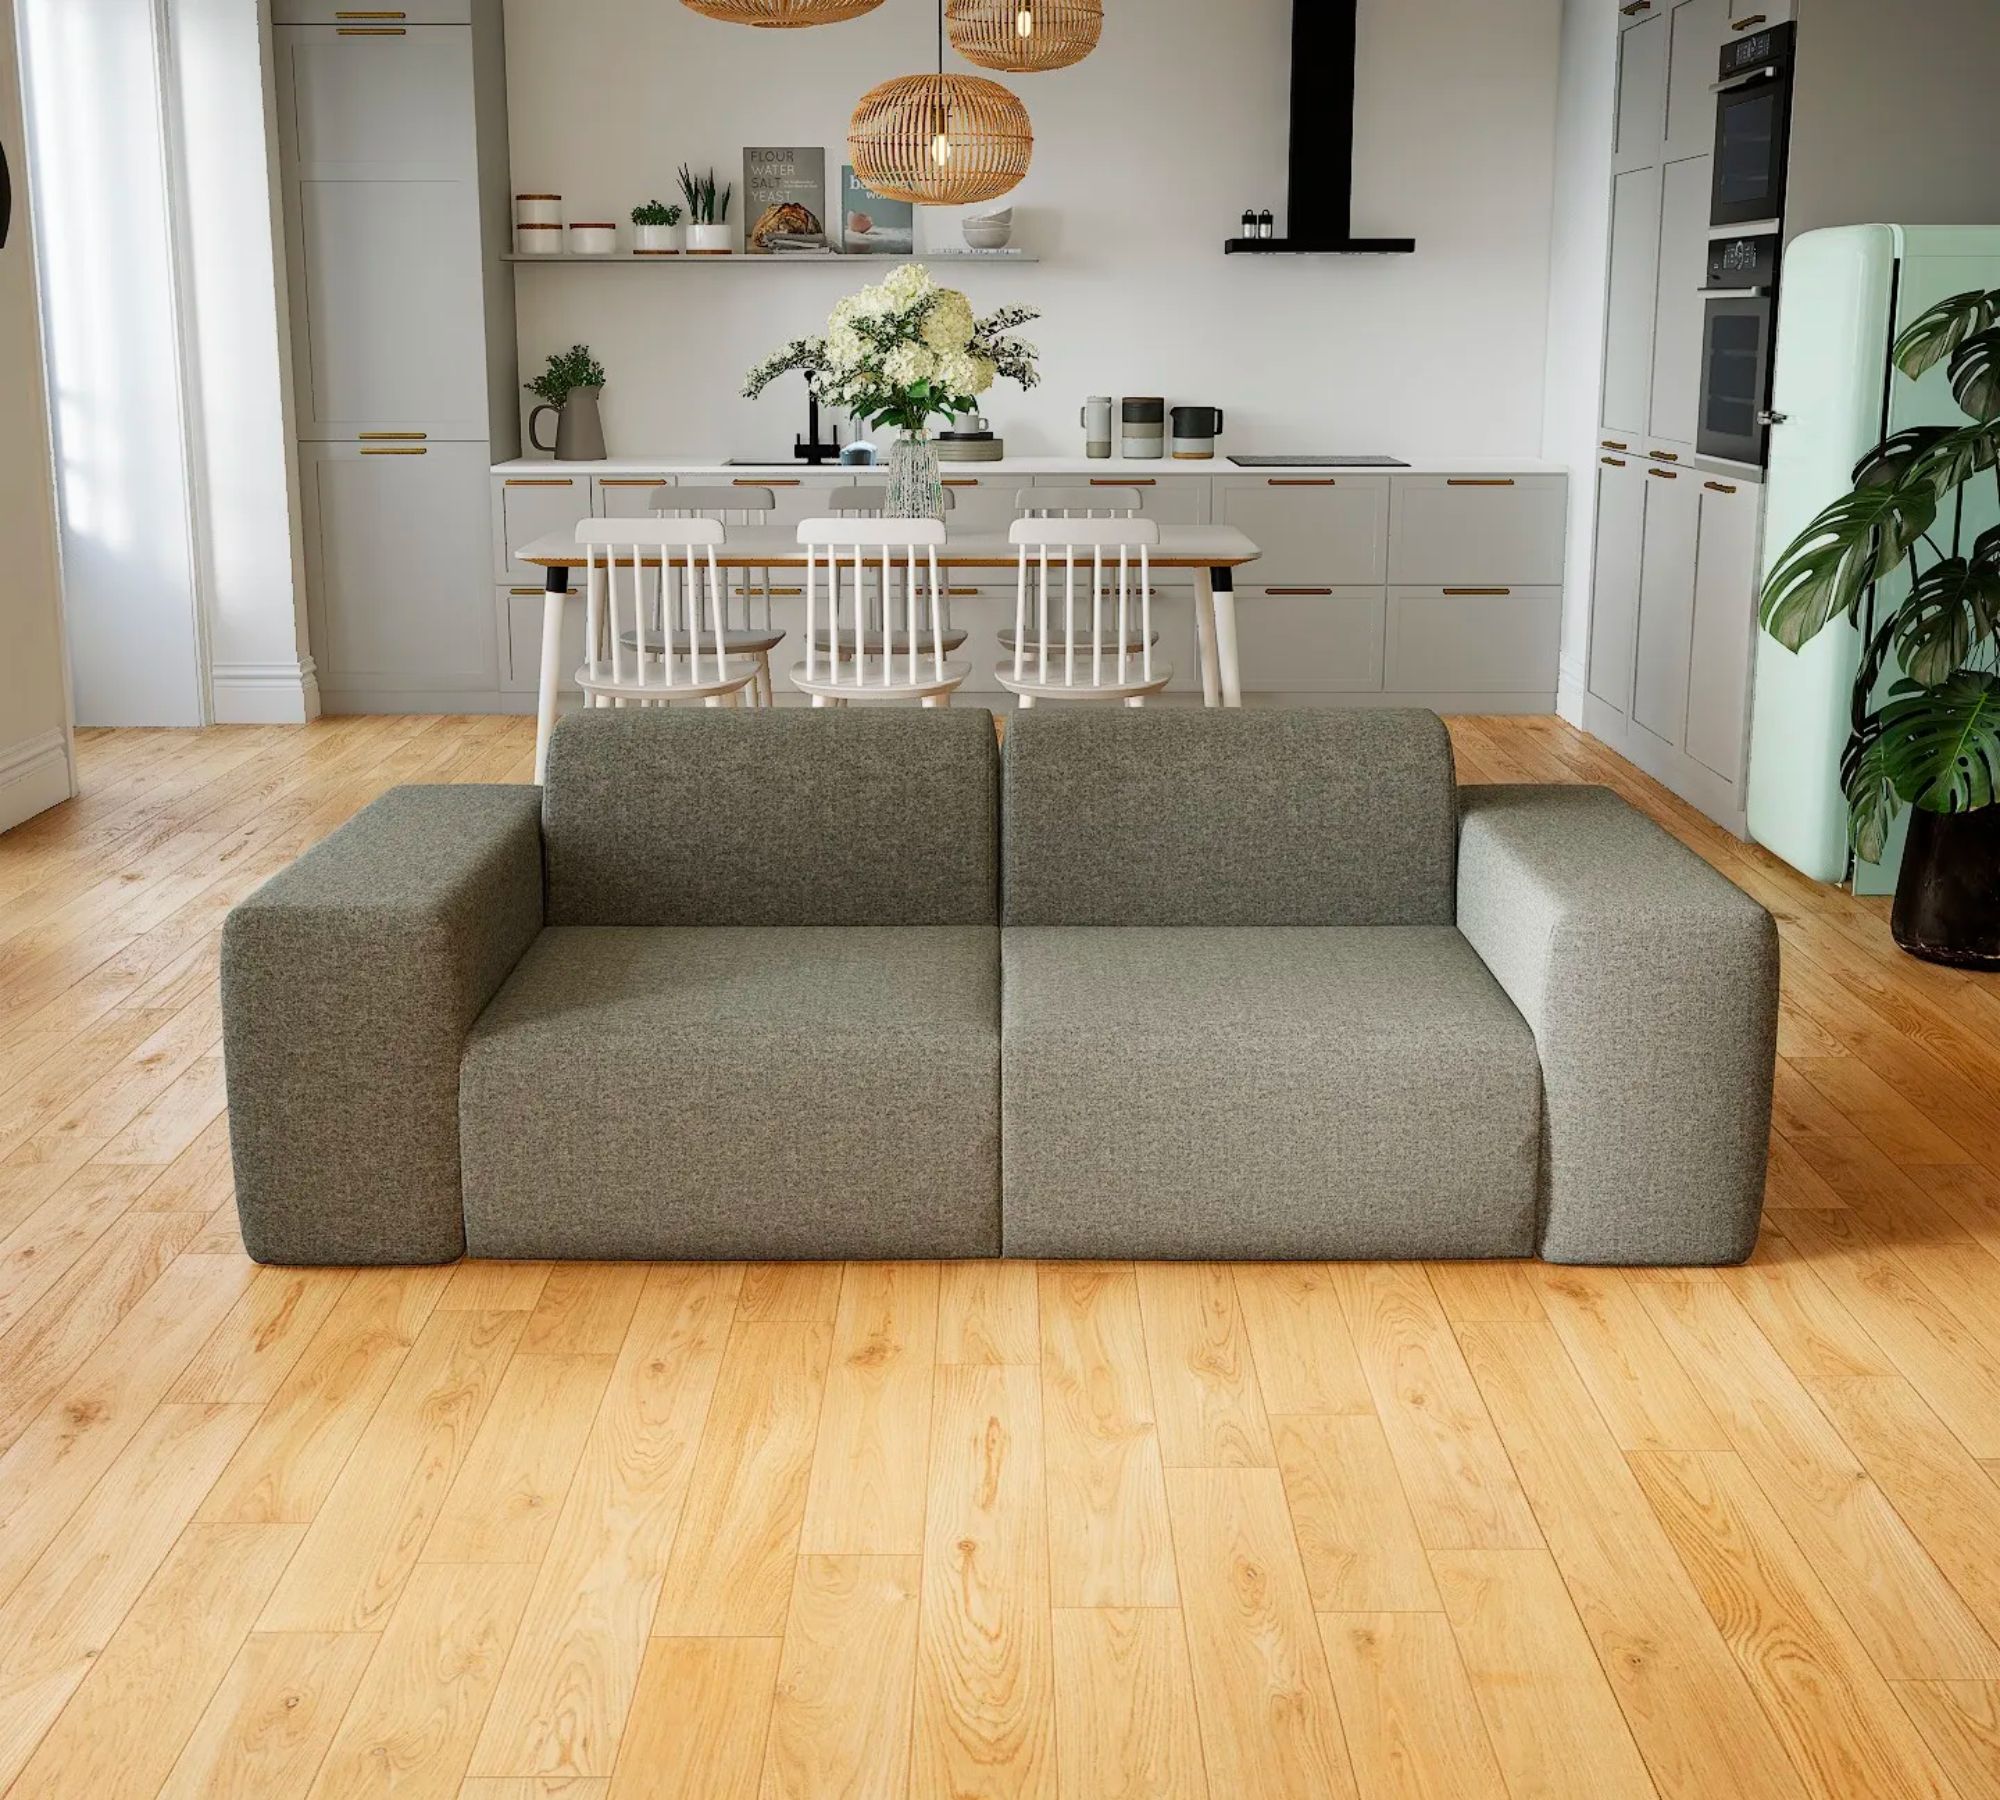 Pyllow Sofa 2-Sitzer Kiesgrau meliert 100% natürliche Wolle